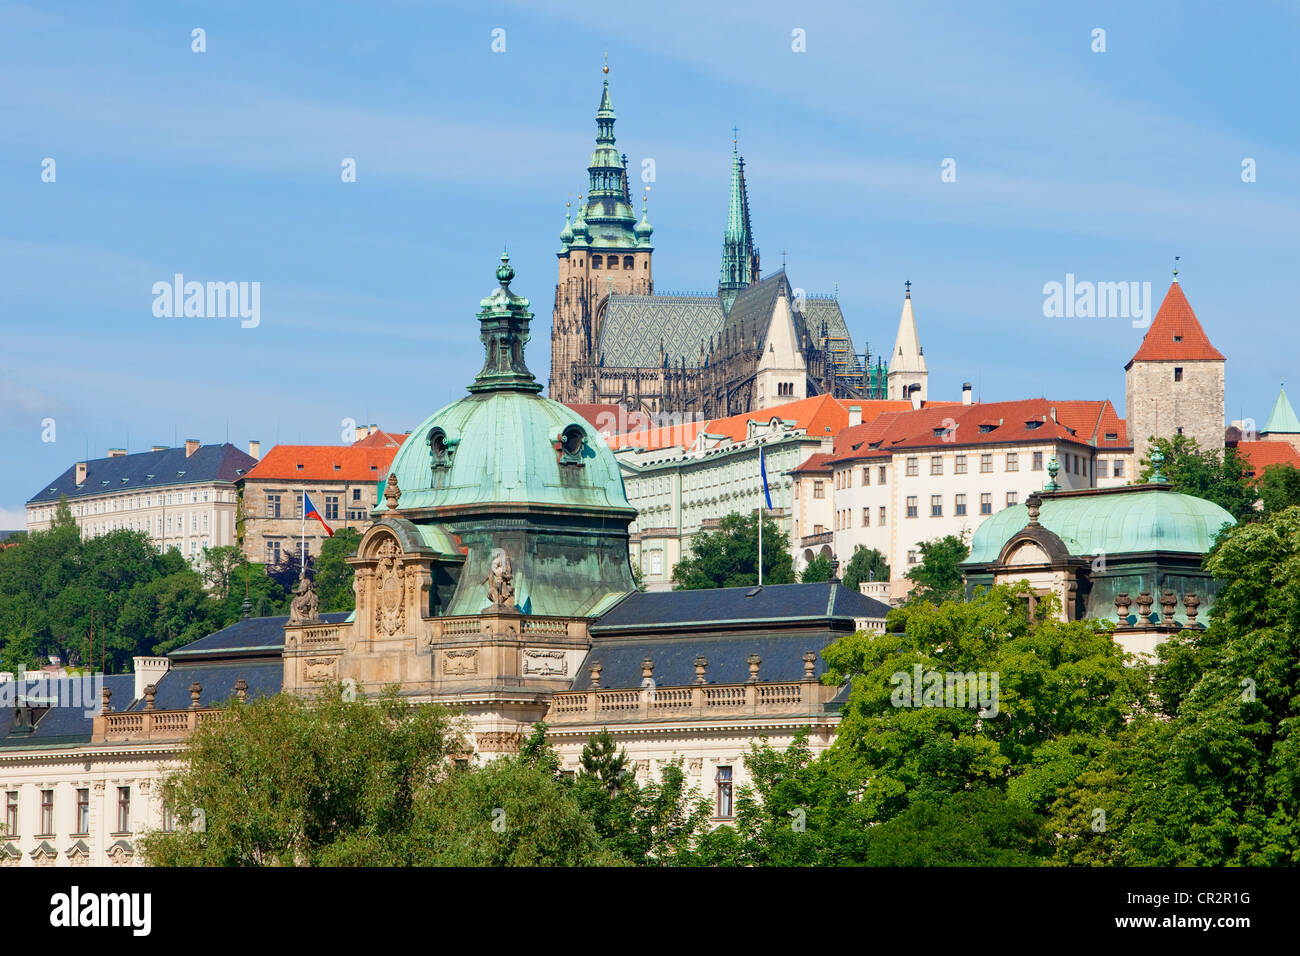 République tchèque, Prague - hradcany castle st, cathédrale Saint-Guy. Banque D'Images